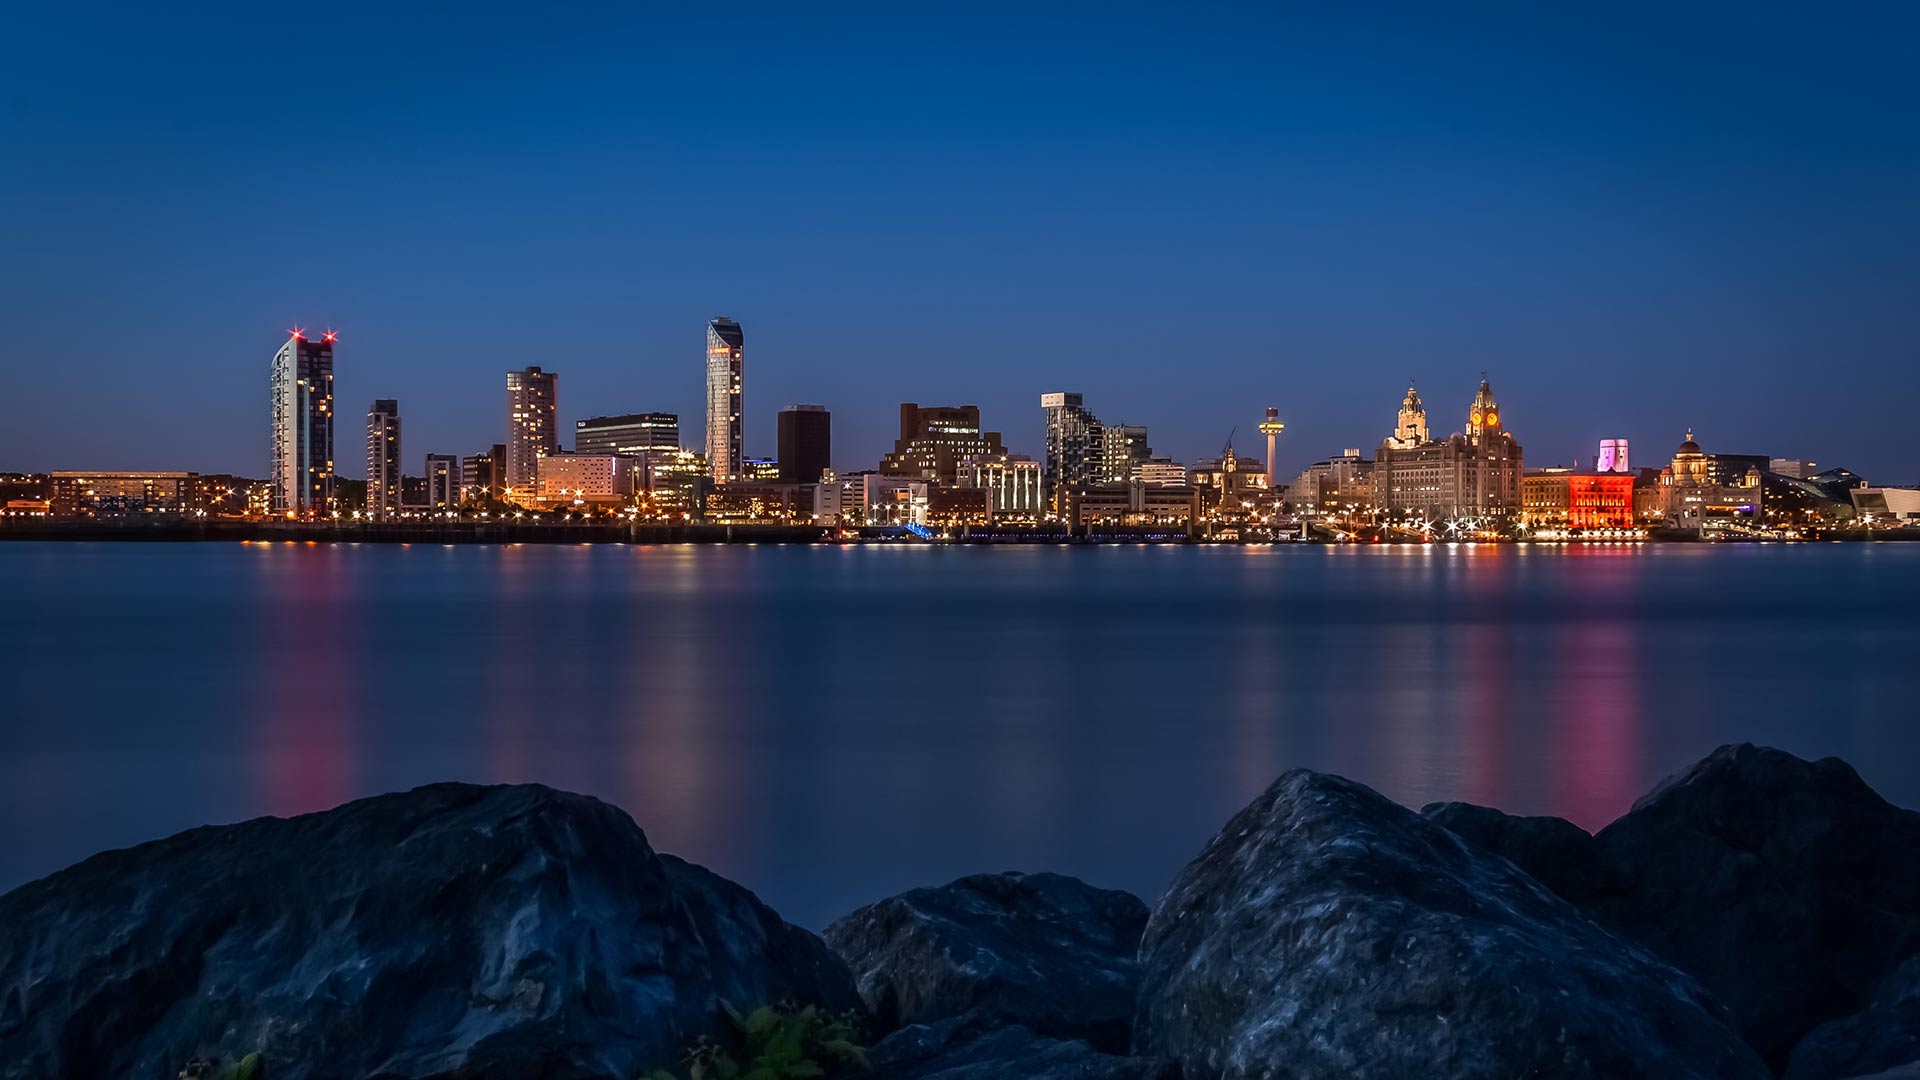 Liverpool skyline at night.